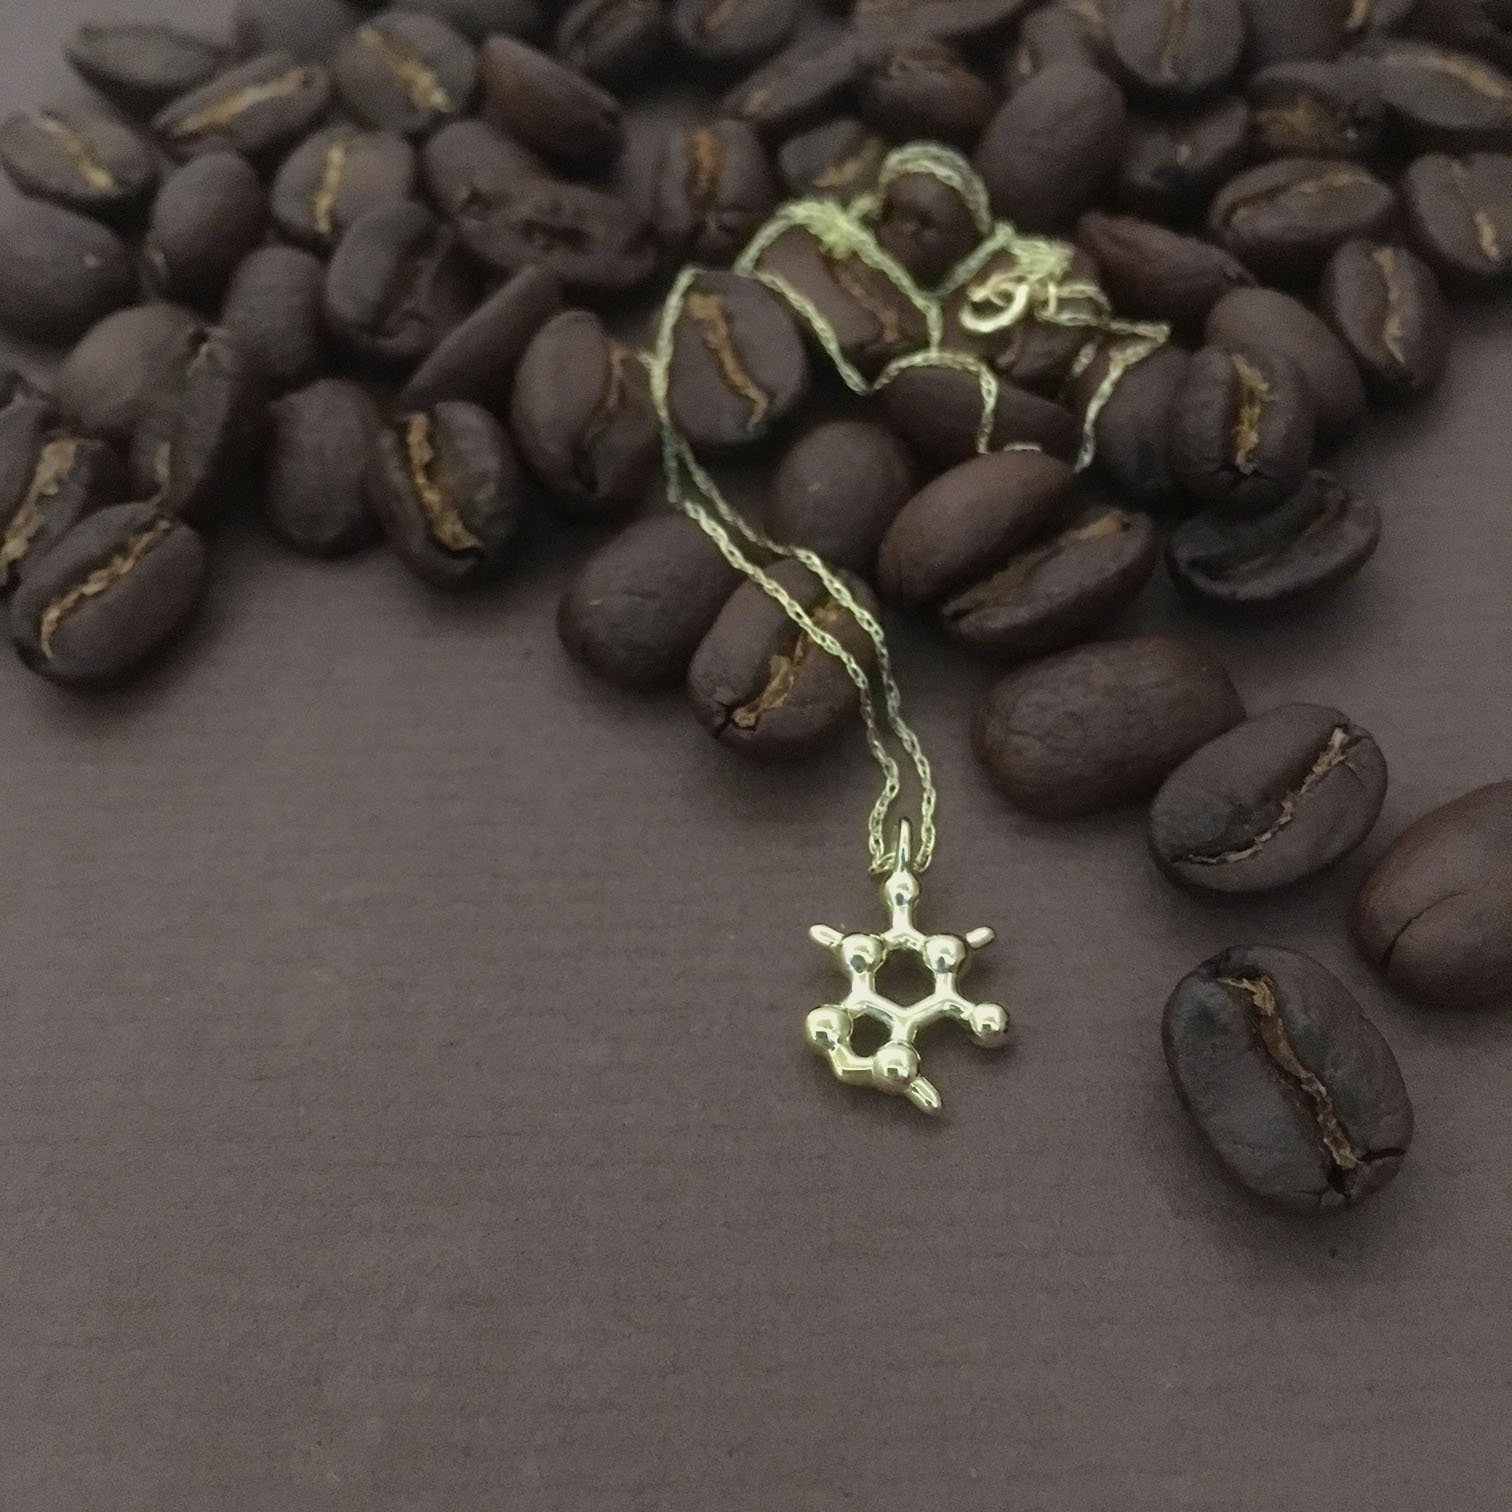 caffeine molecule necklace